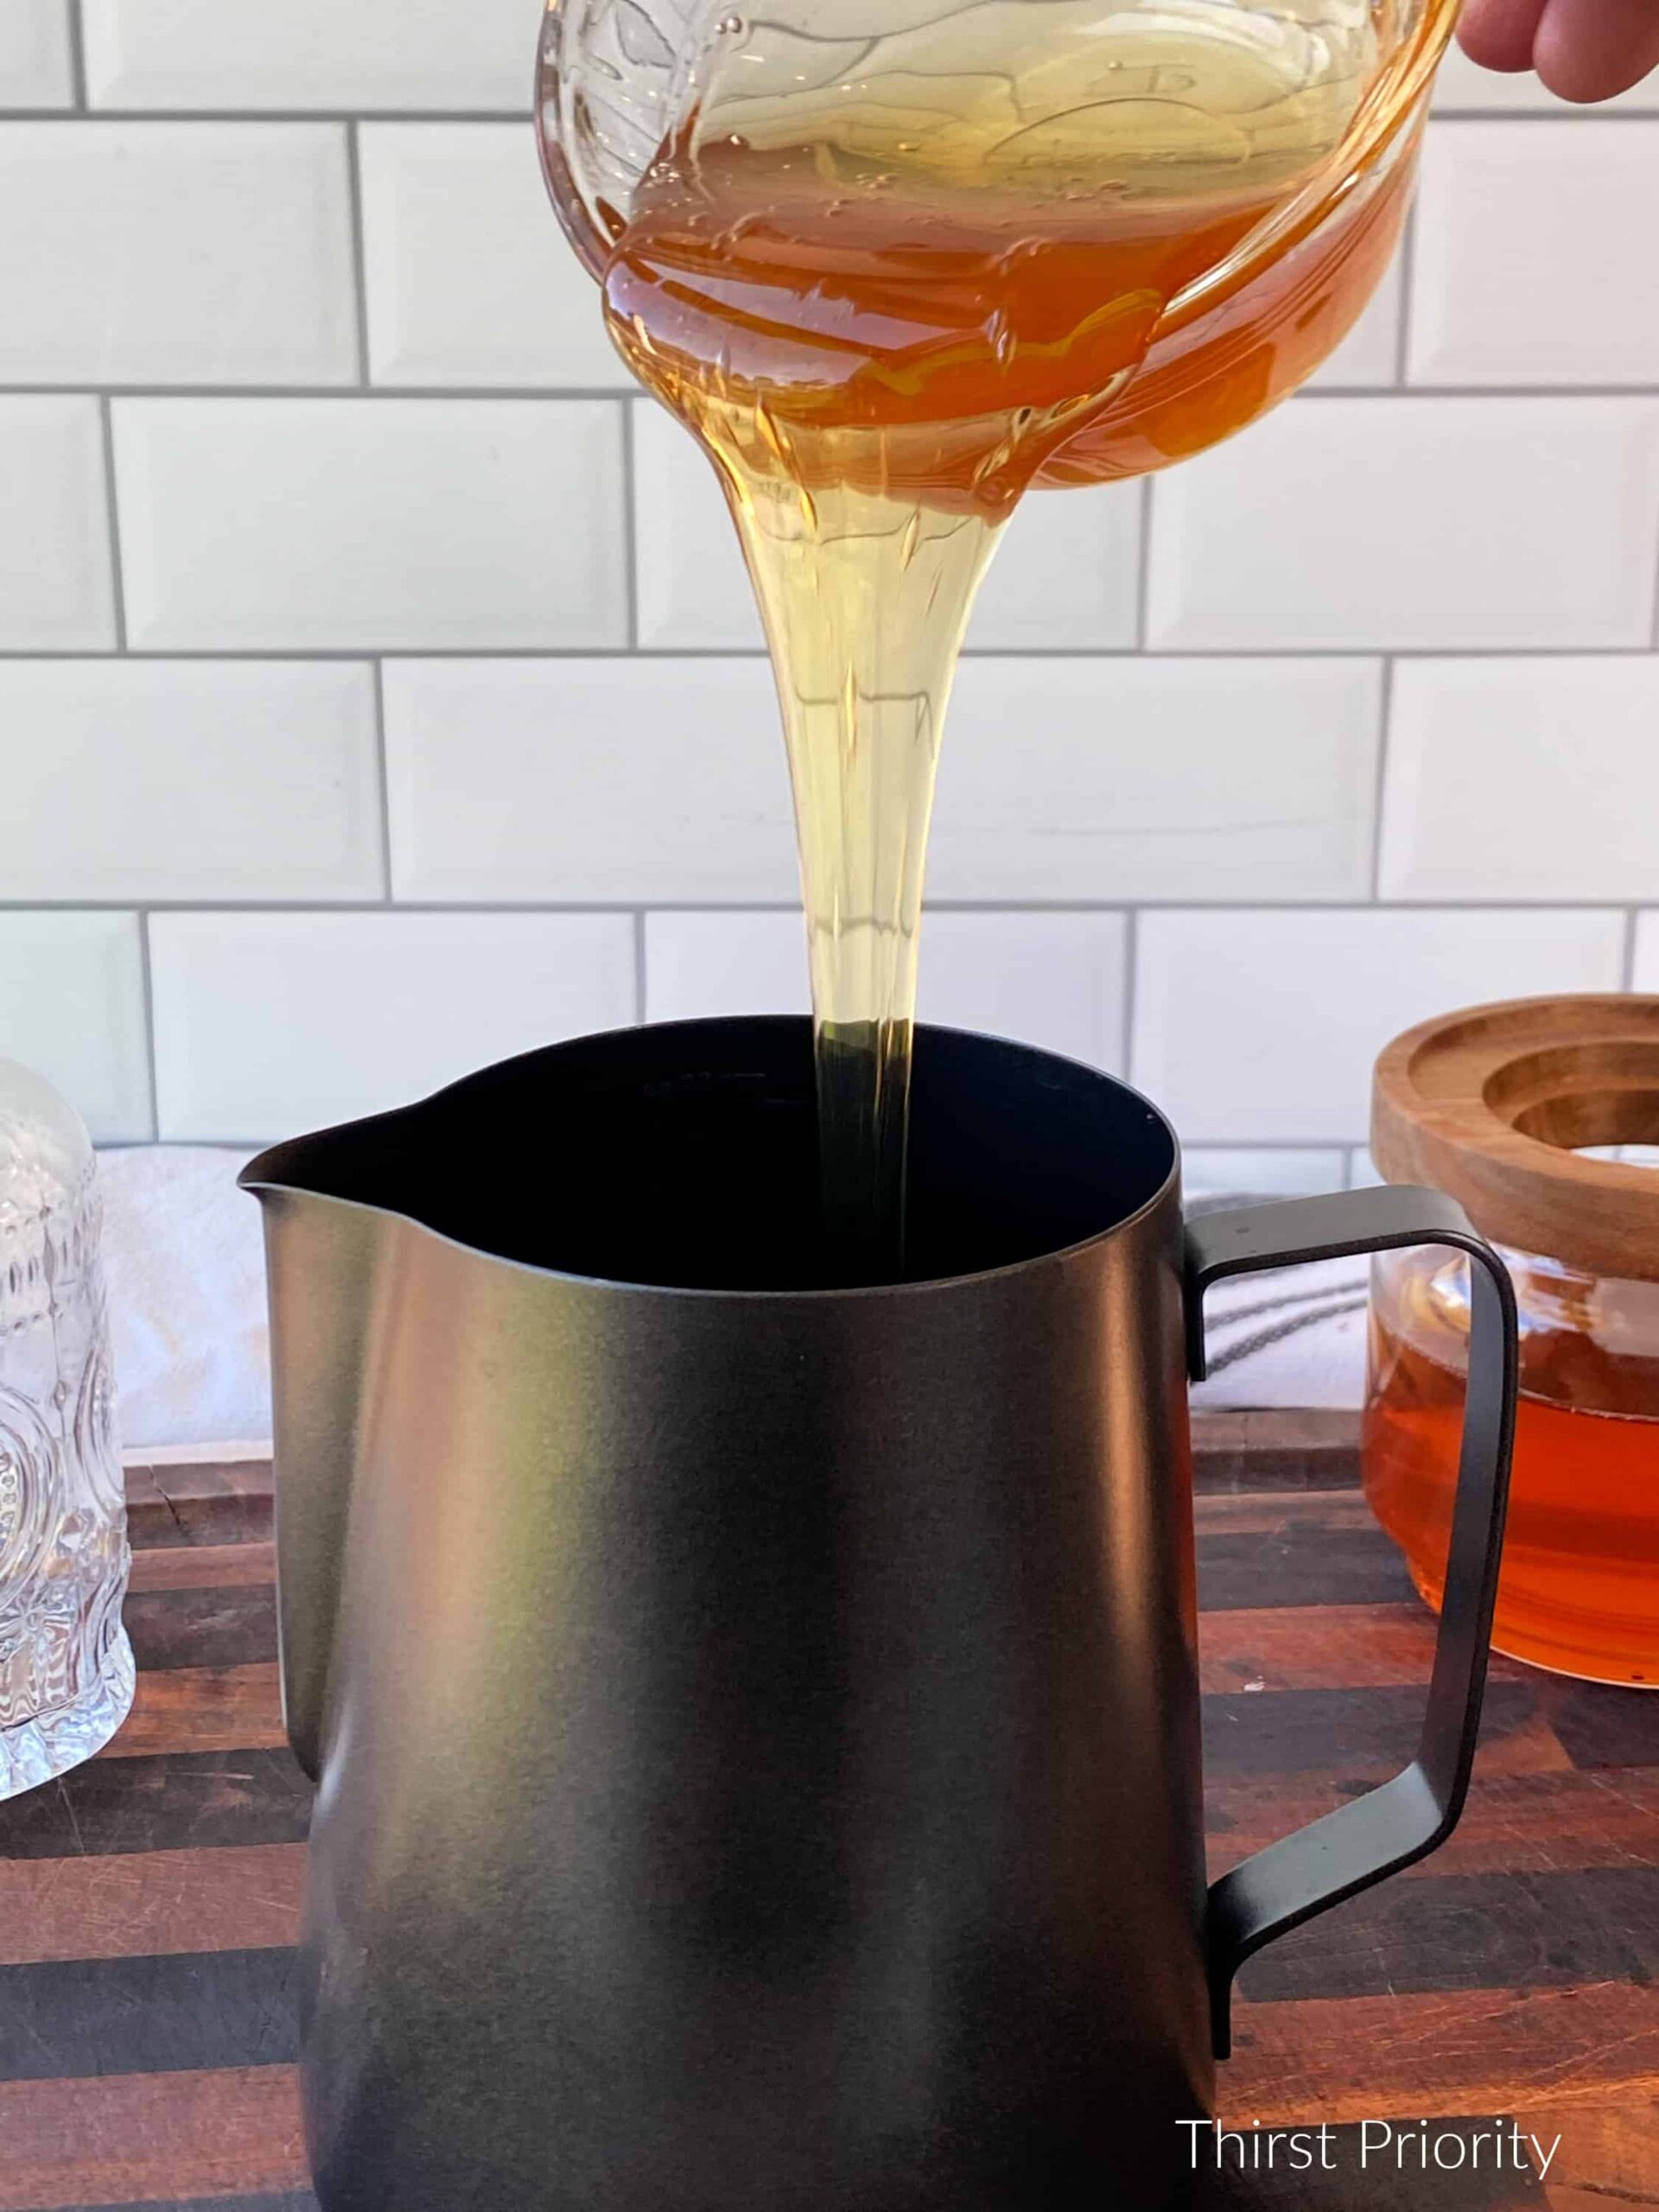 pour local honey into saucepan